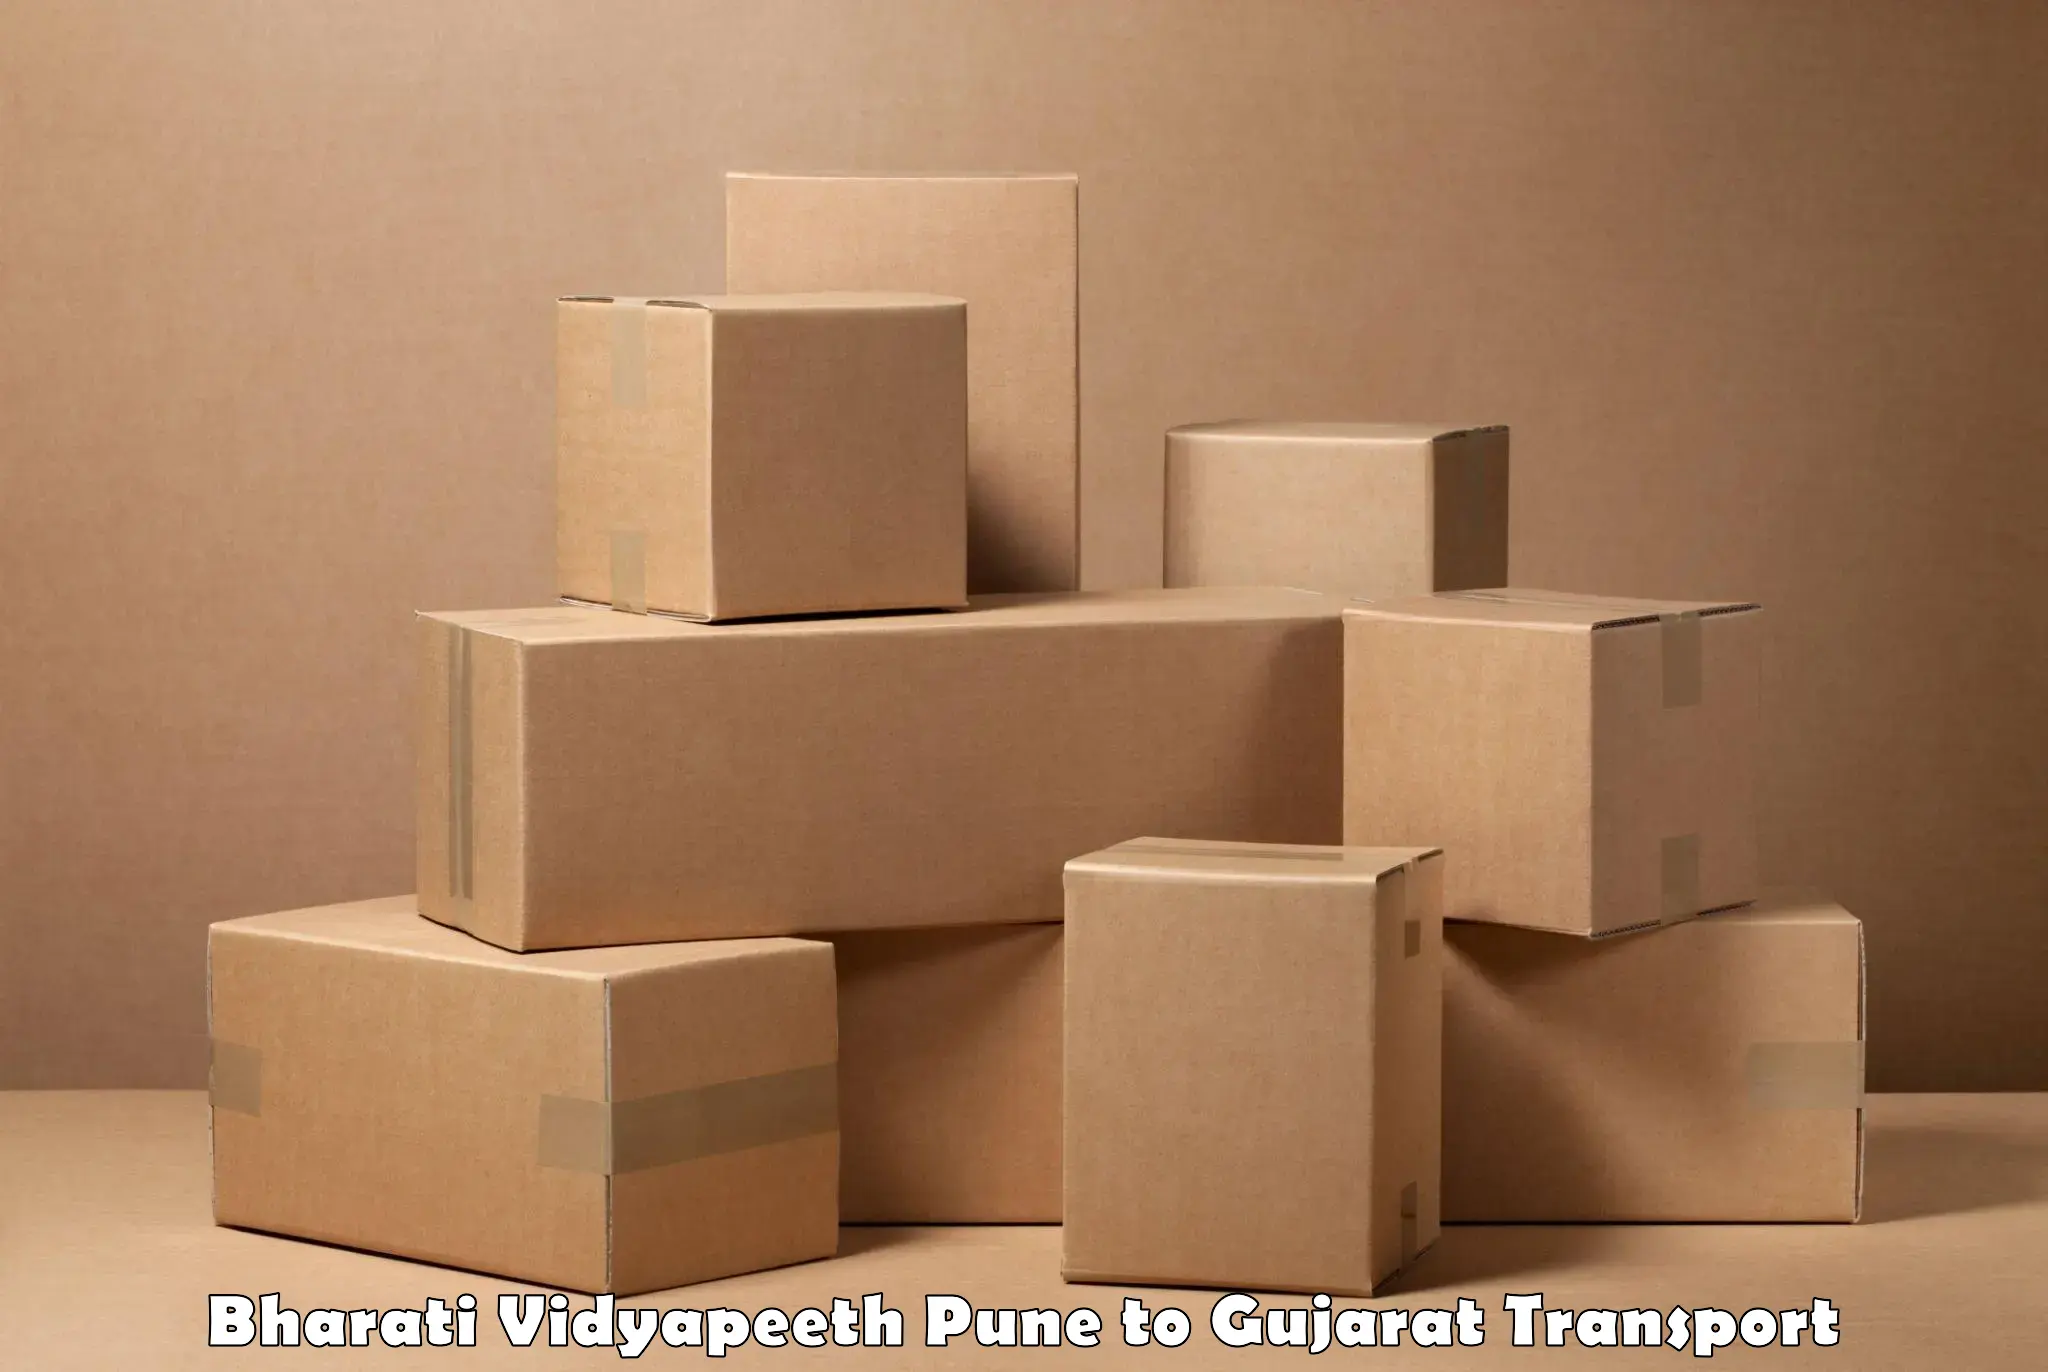 Furniture transport service Bharati Vidyapeeth Pune to IIT Gandhi Nagar